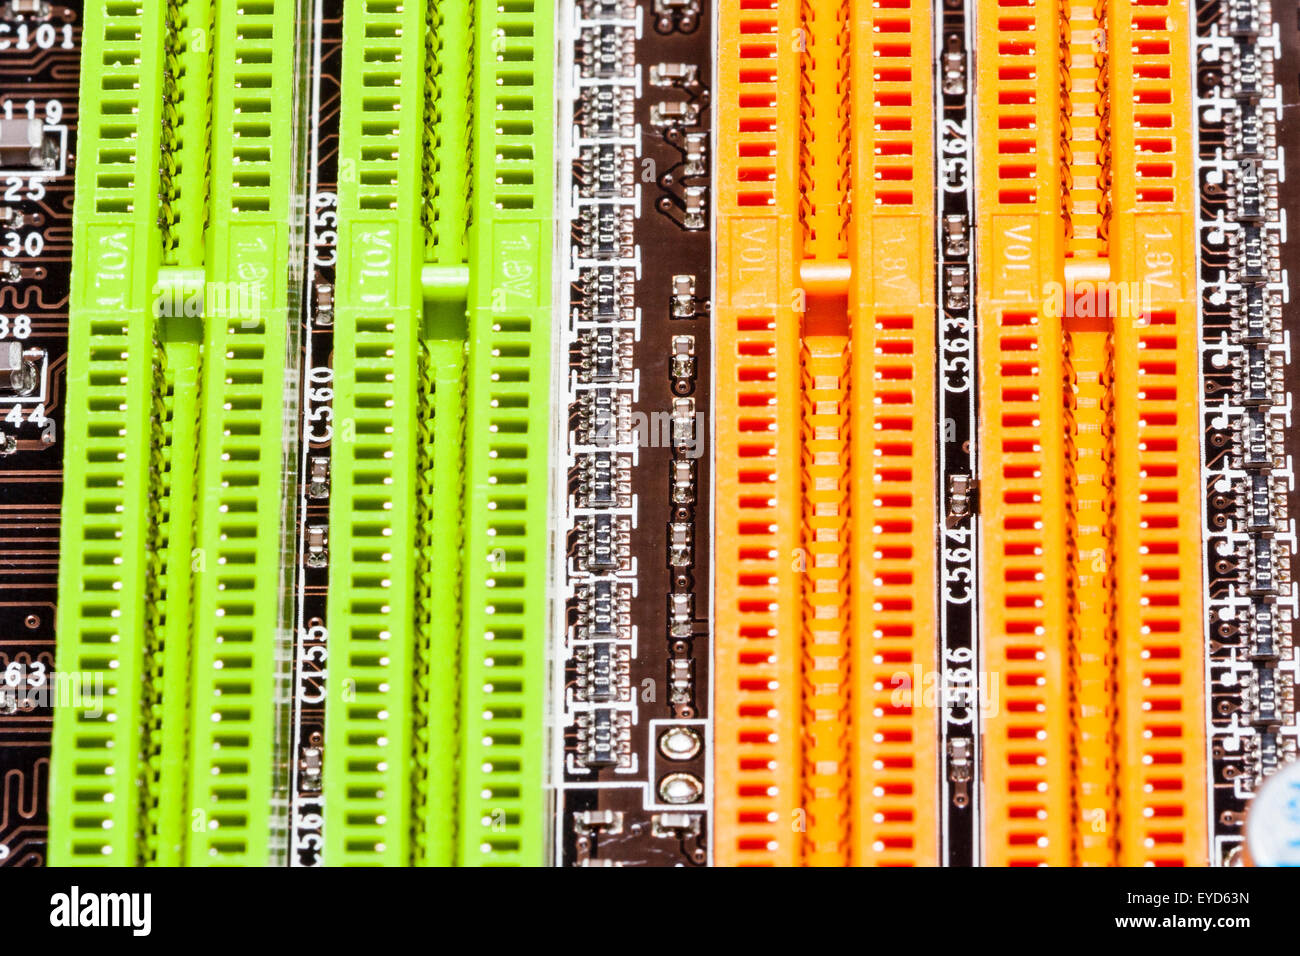 Accueil Carte mère informatique détail. Mémoire RAM DIMM vide sur la carte  mère, couleur : orange et vert Photo Stock - Alamy